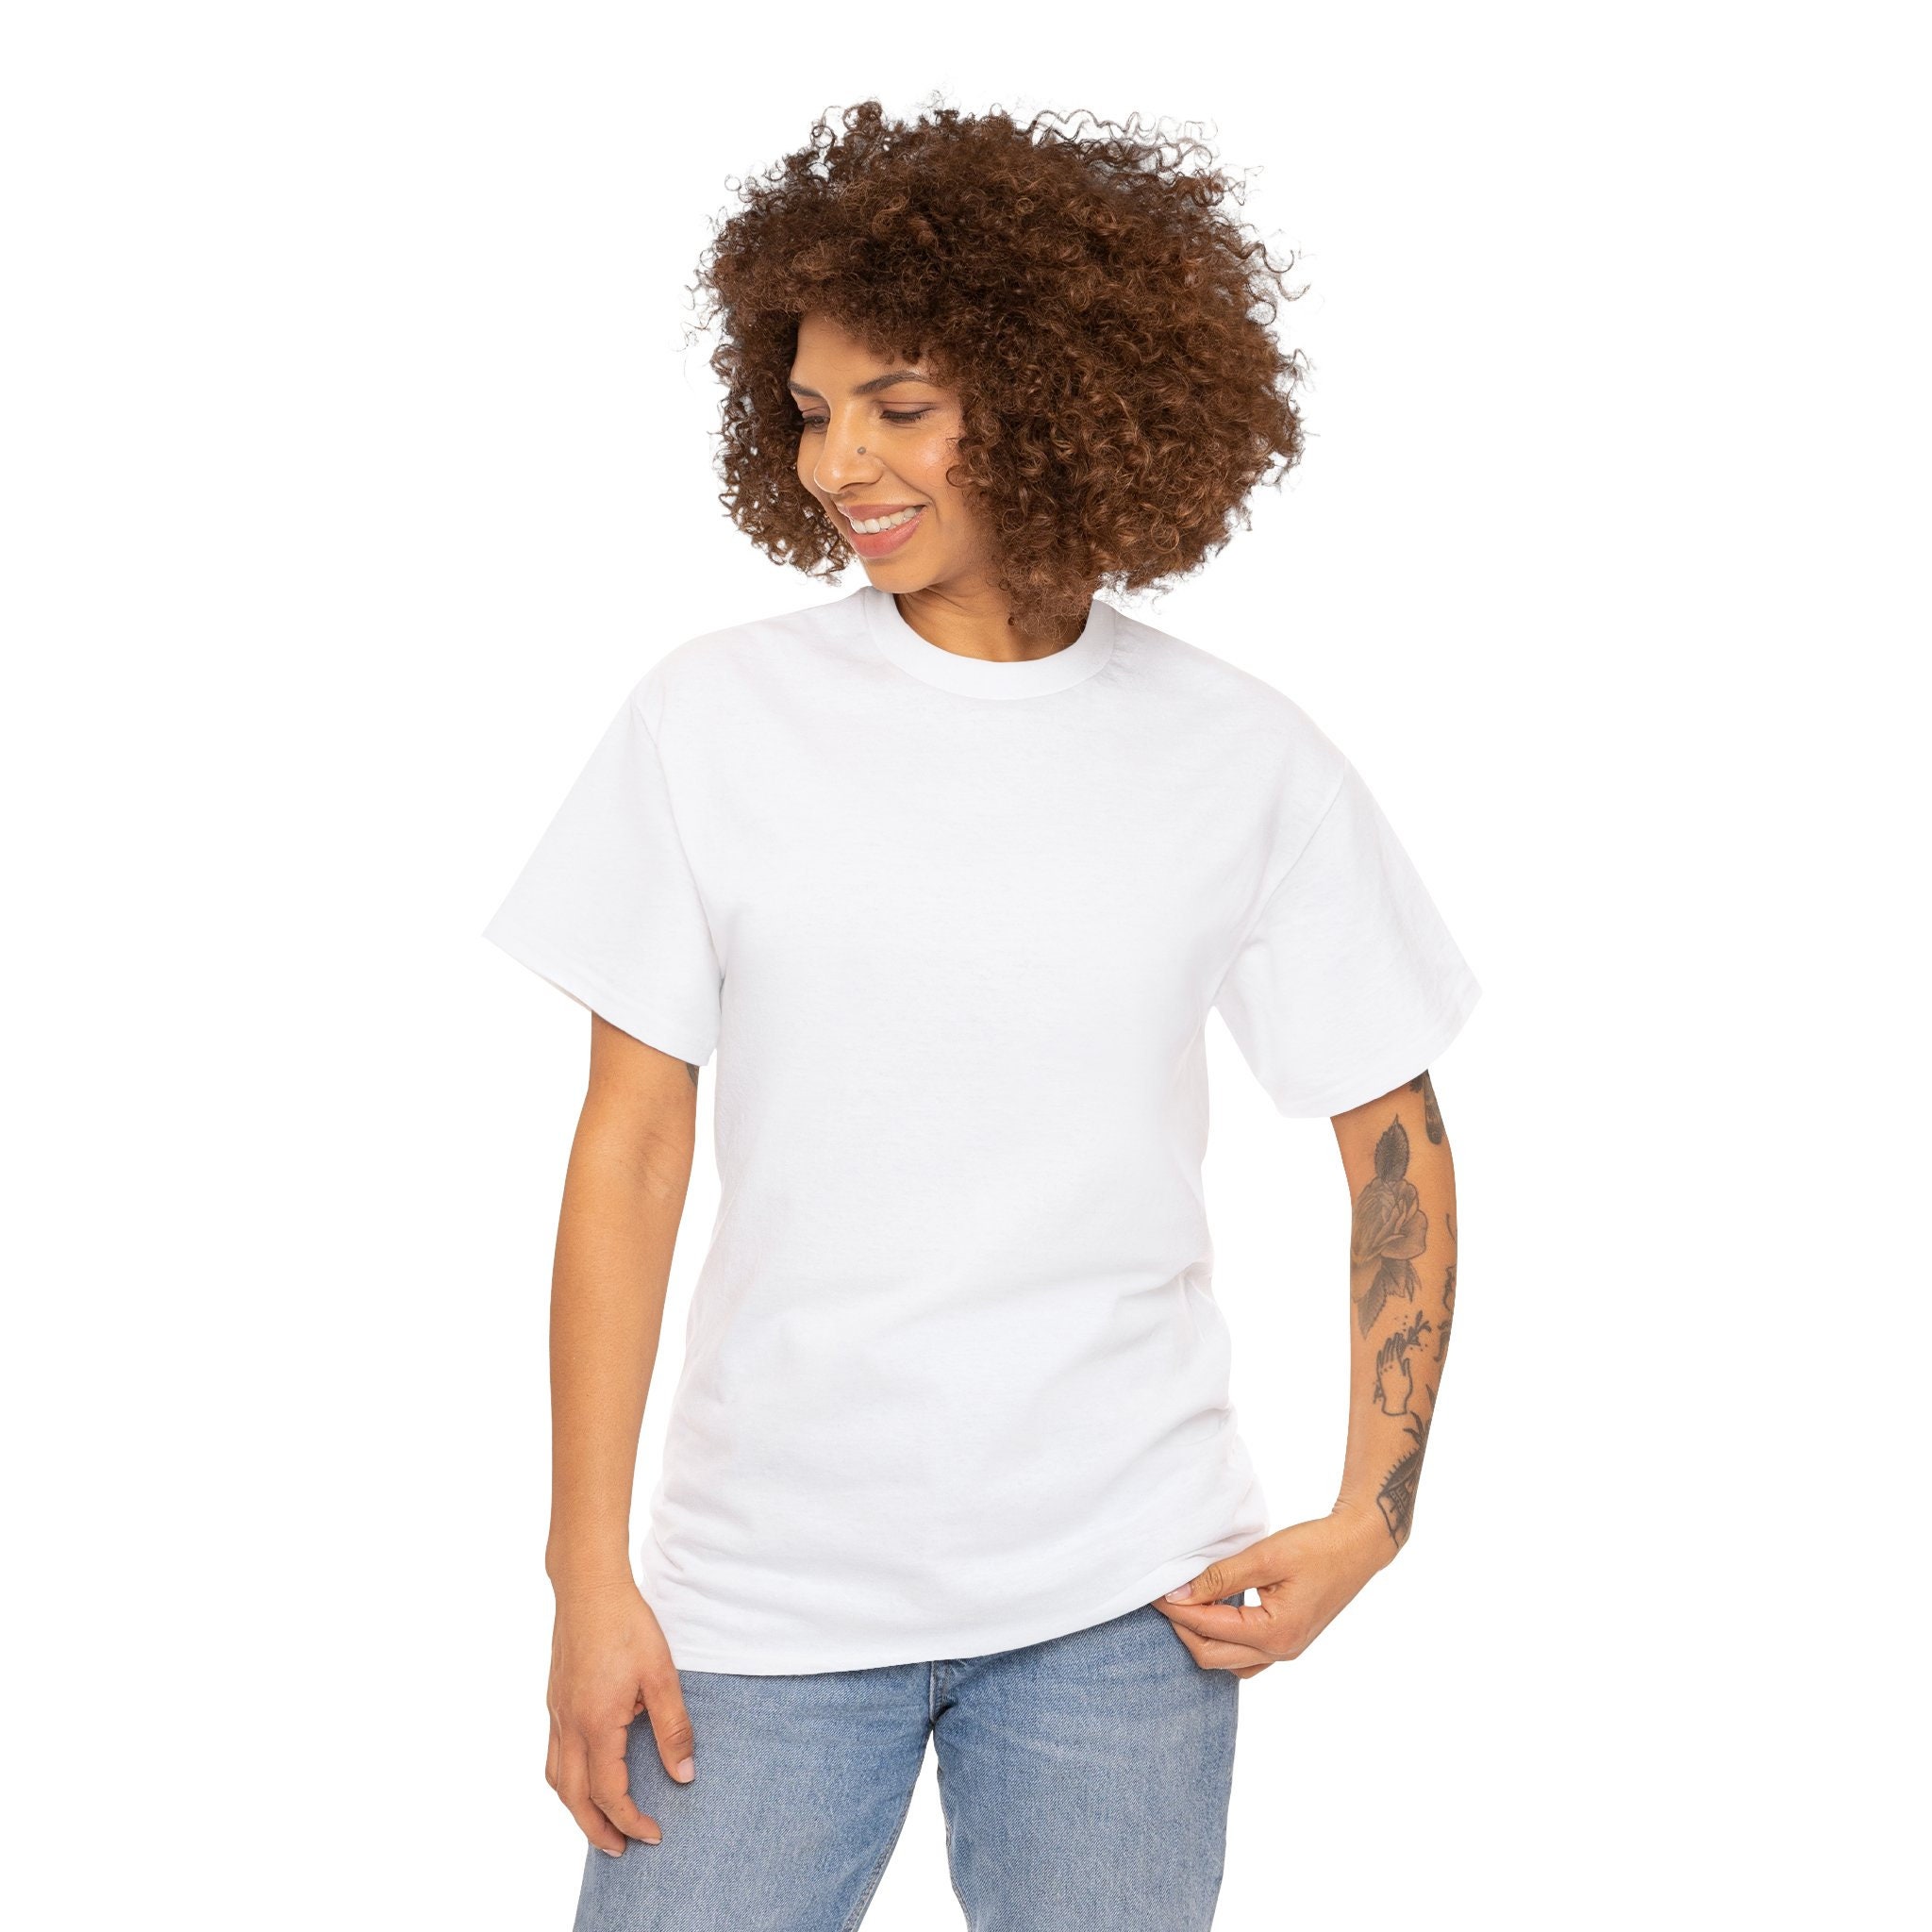 Camiseta blanca de manga corta para hombre clásica con cuello en V -  Paquetes al por mayor múltiples ya granel